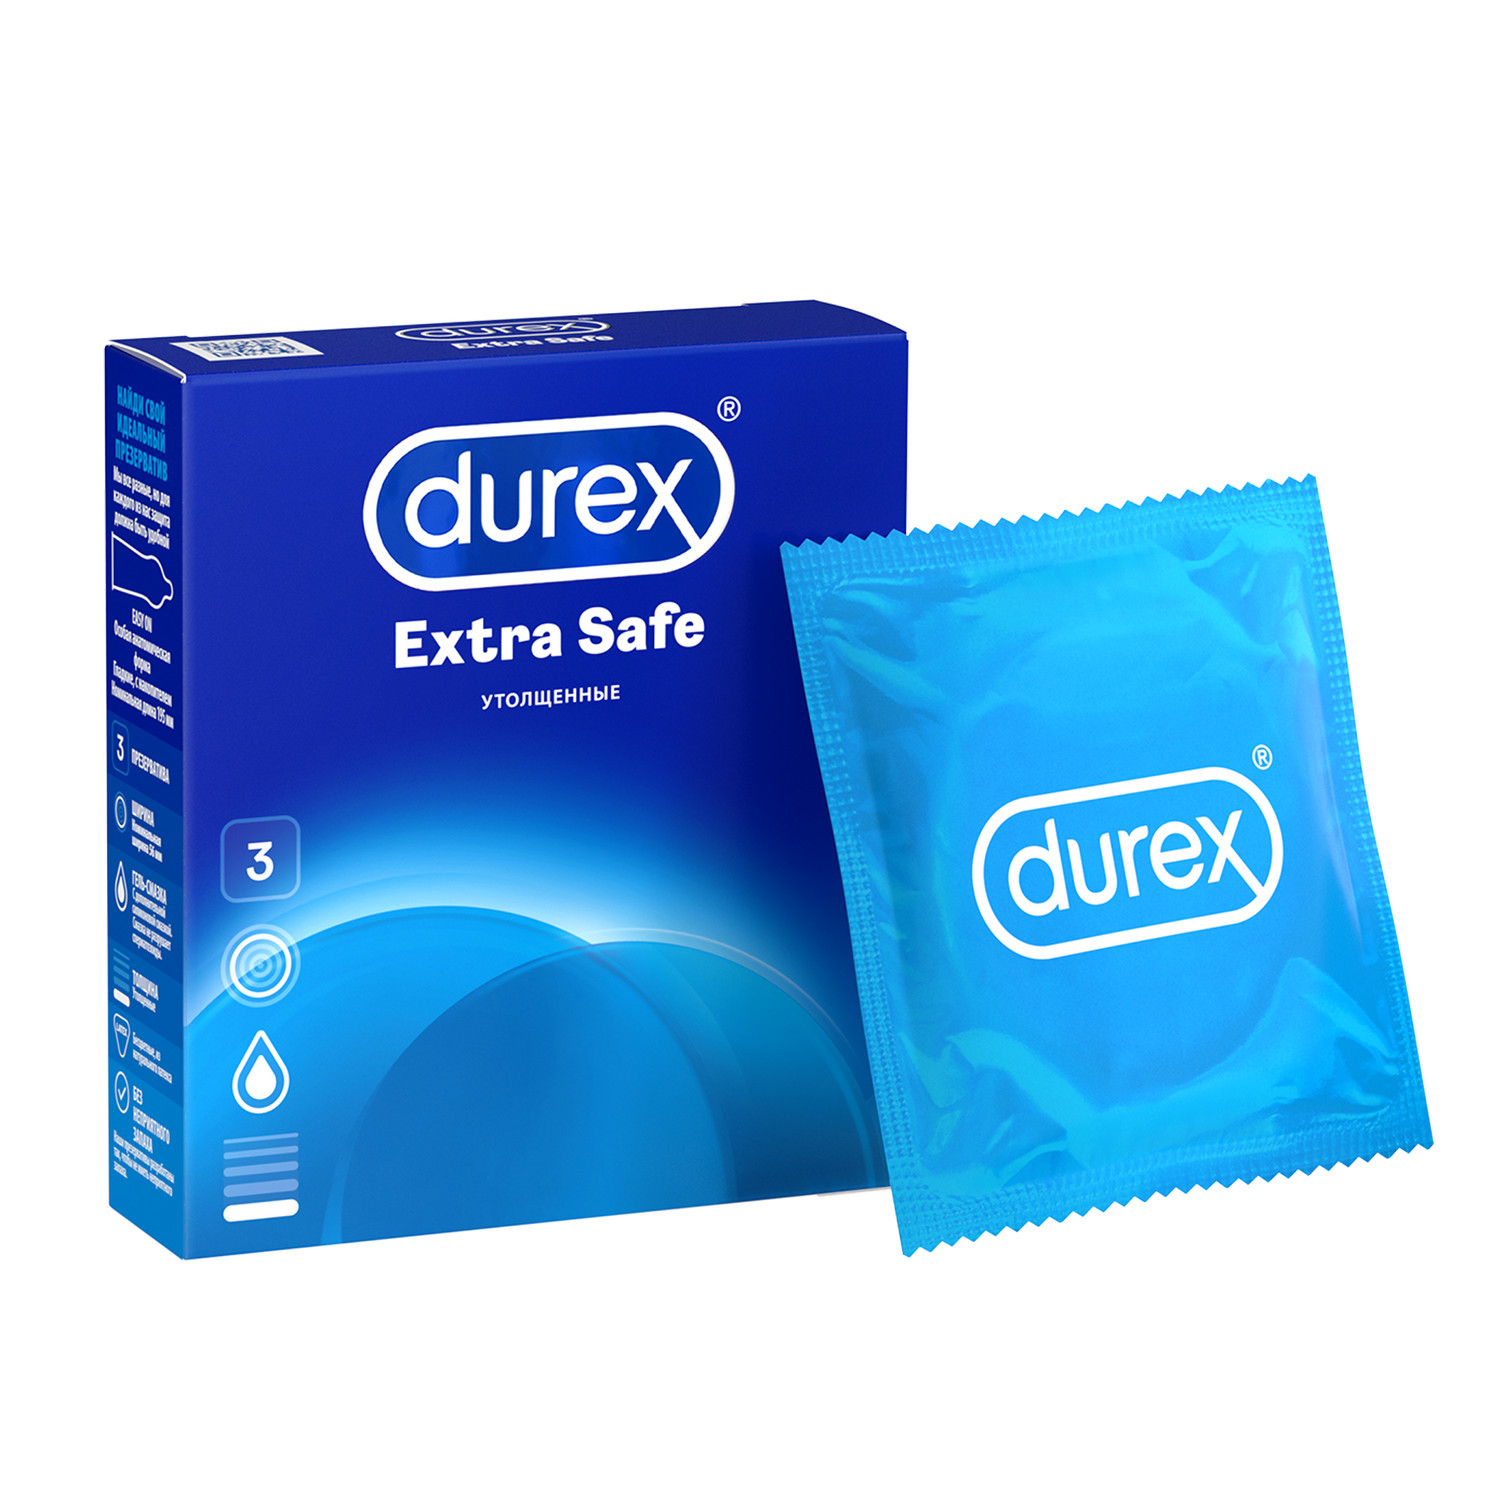 Презервативы Durex Extra Safe утолщенные, 3 шт. safe